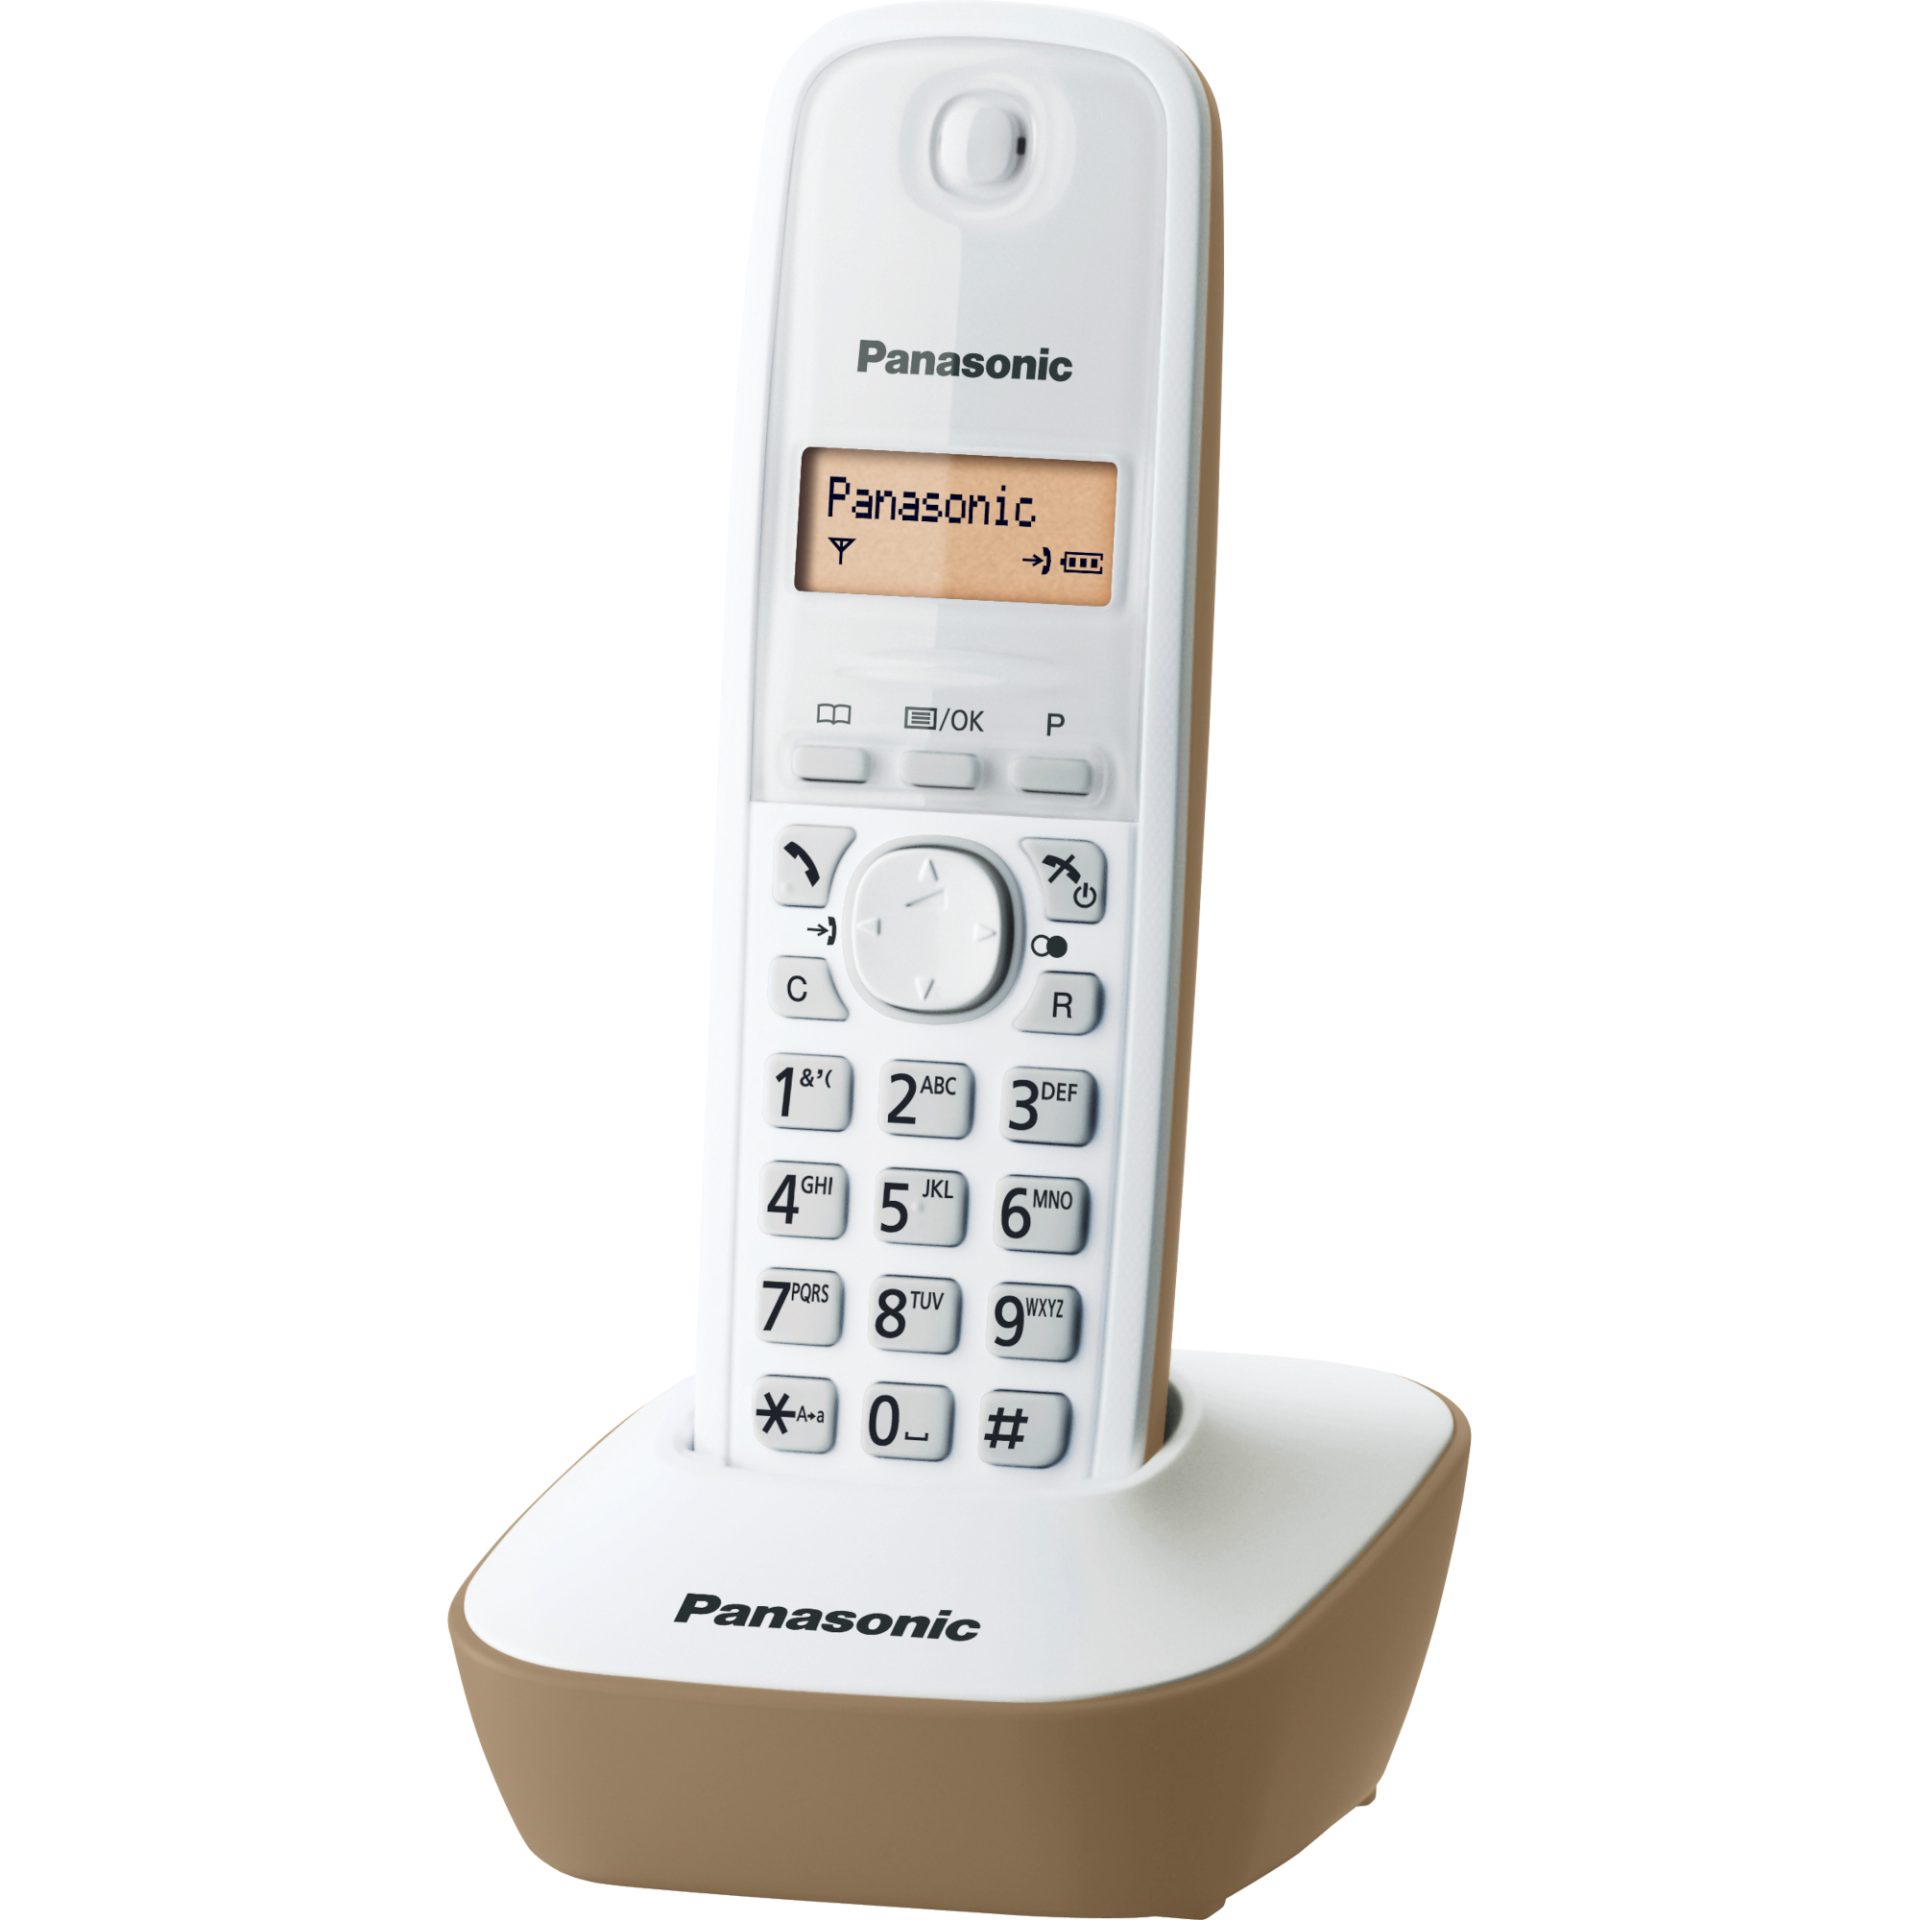 Panasonic KX-TG1611 DECT bezdrátový telefon (snadné použití, telefonní seznam 50 položek, podsvícený LCD displej, hodiny, budík), bílá a béžová